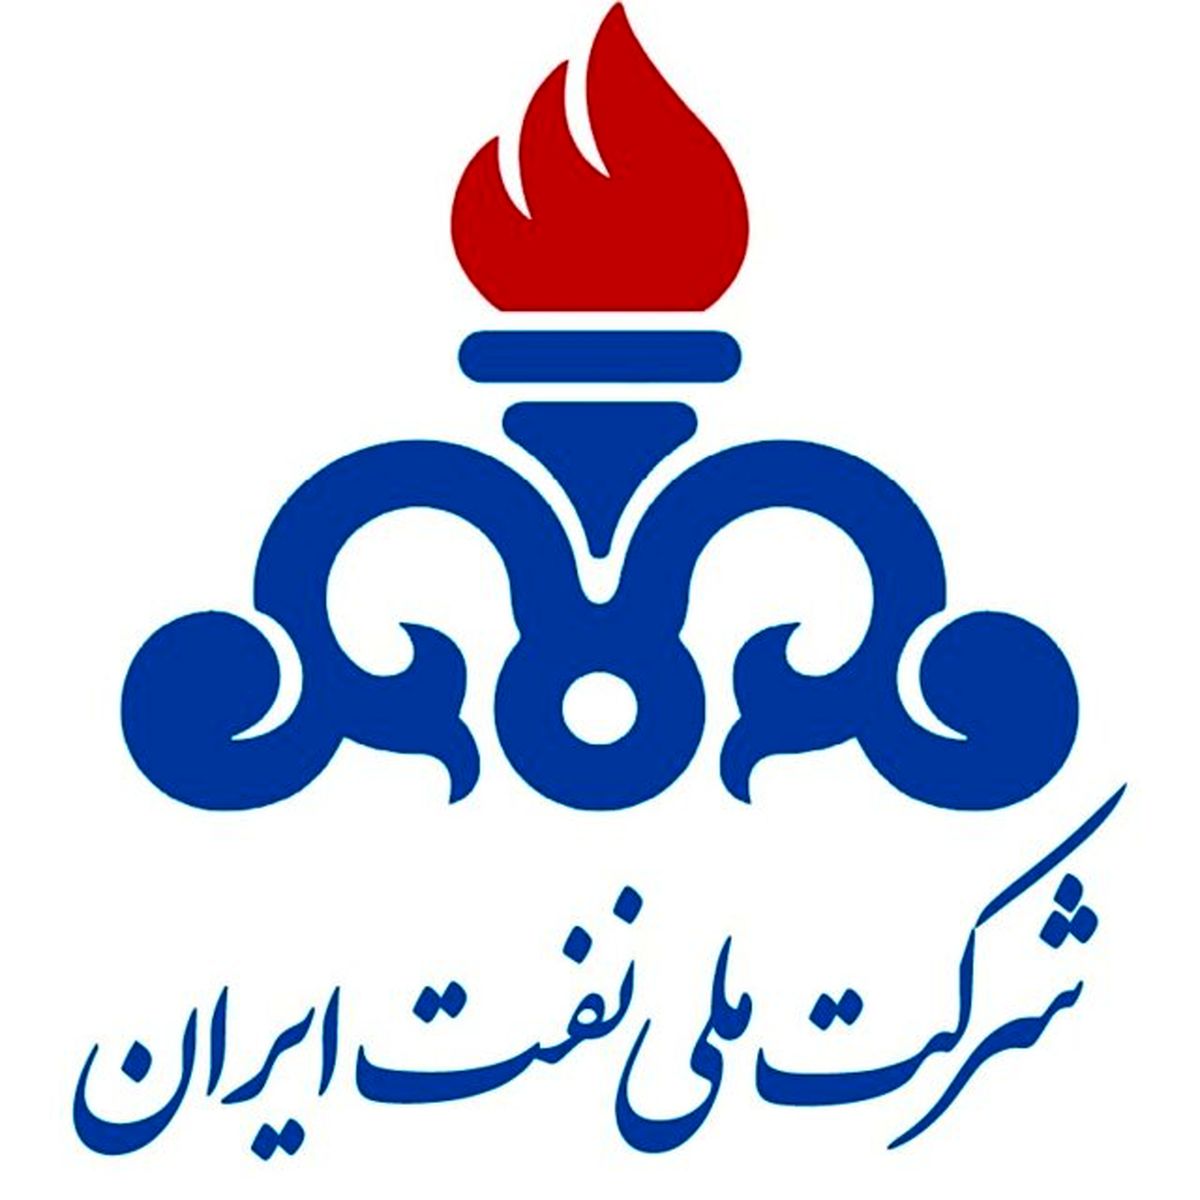 بیانیه جمعی از نیروهای انقلابی و نخبه وزارت نفت در خصوص انتصابات اخیر شرکت ملی نفت ایران